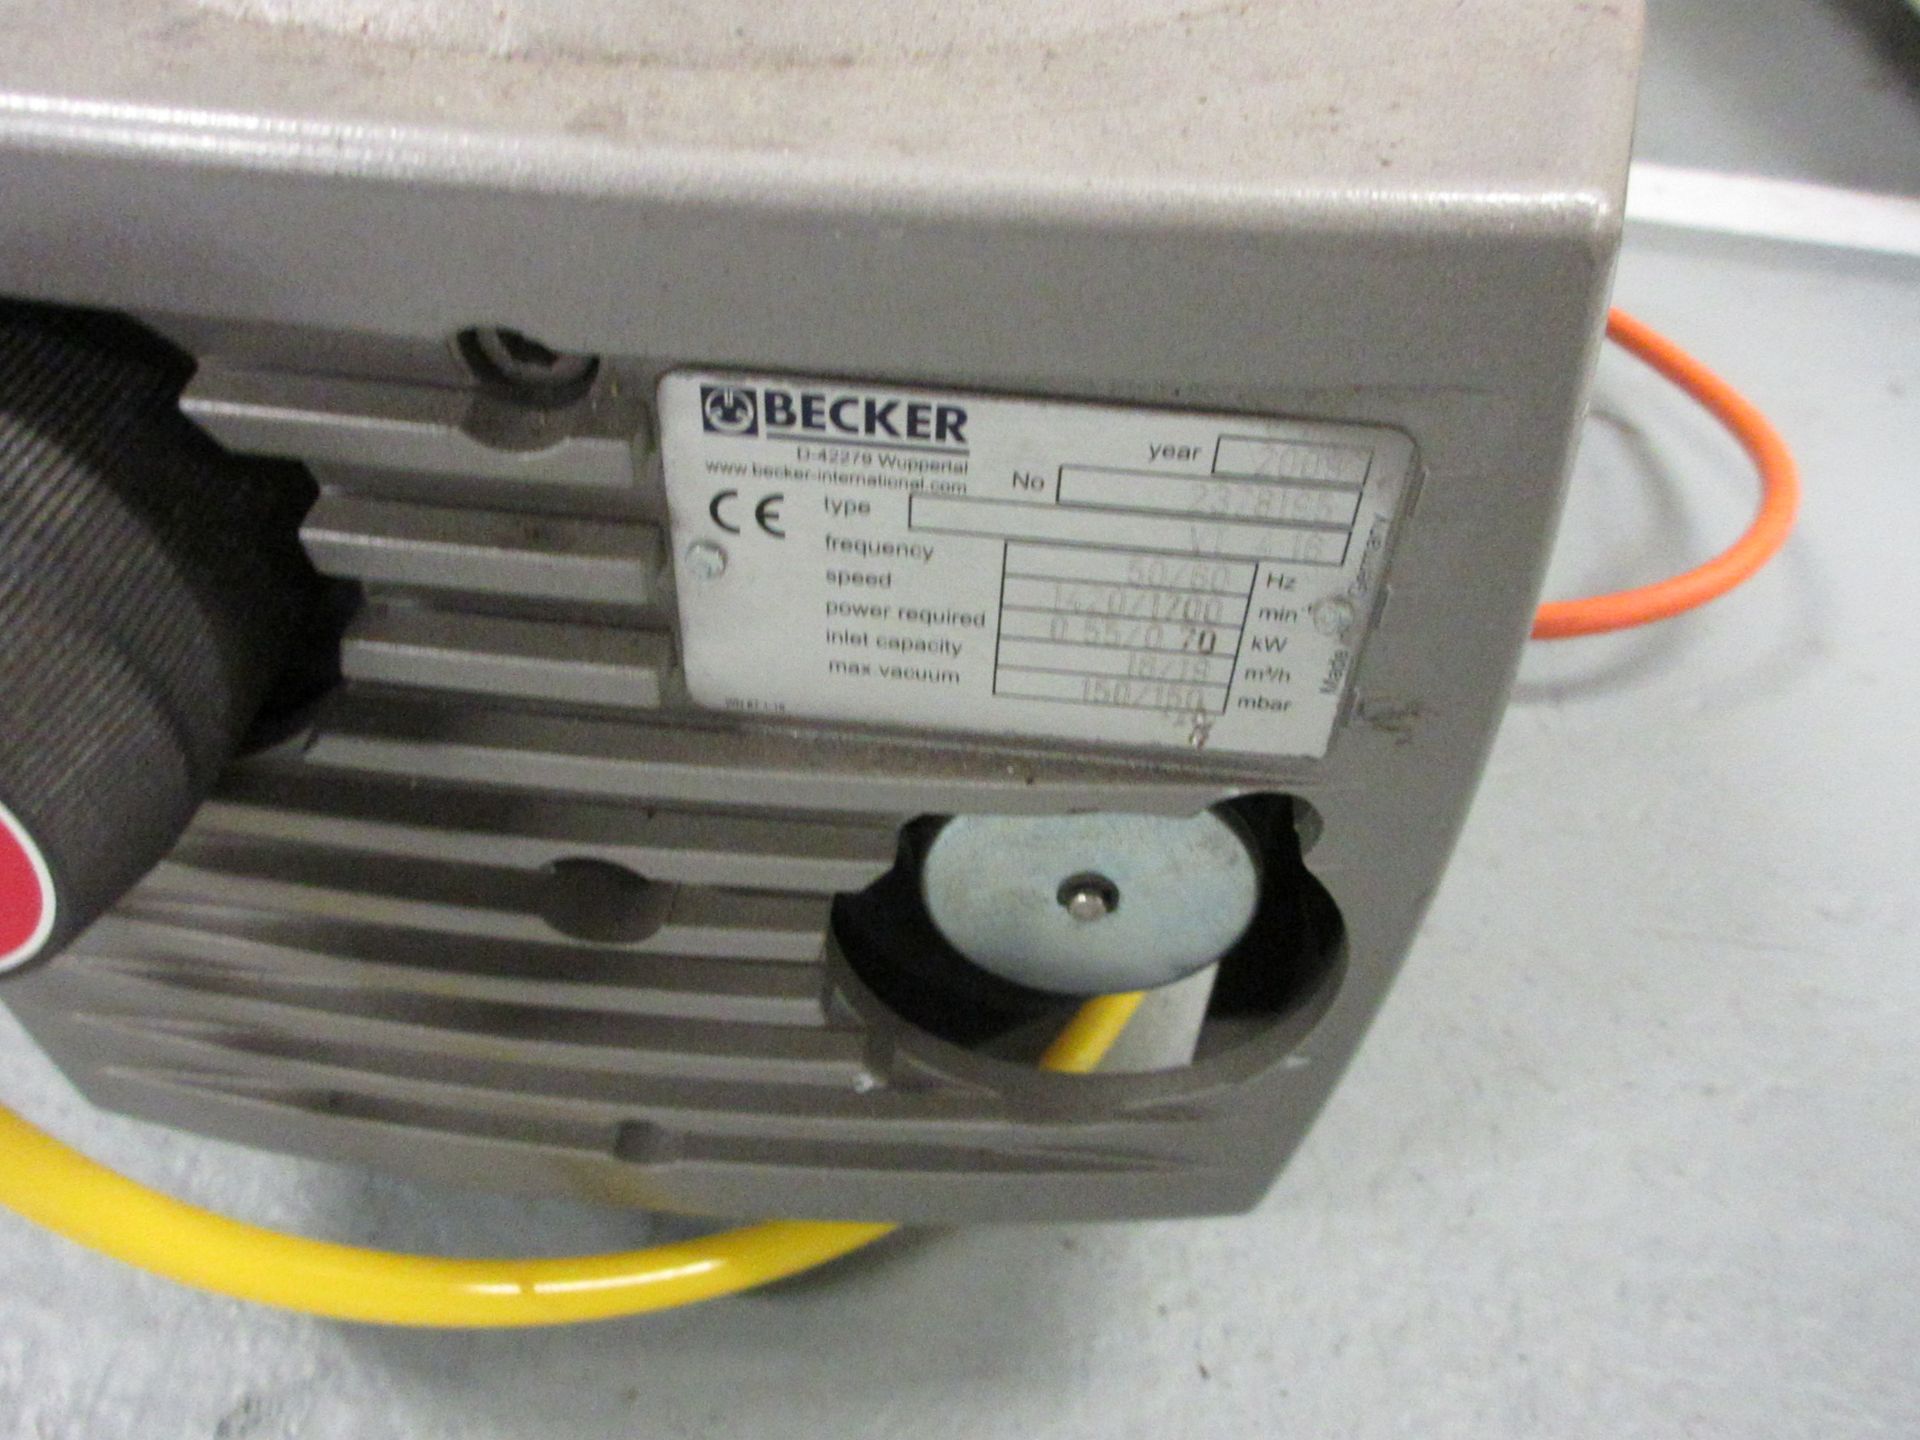 Becker vacuum pump, type VT4.16, serial no. 2378195 inlet capacity 16/19, max vacuum 150/150mbar ( - Image 2 of 3